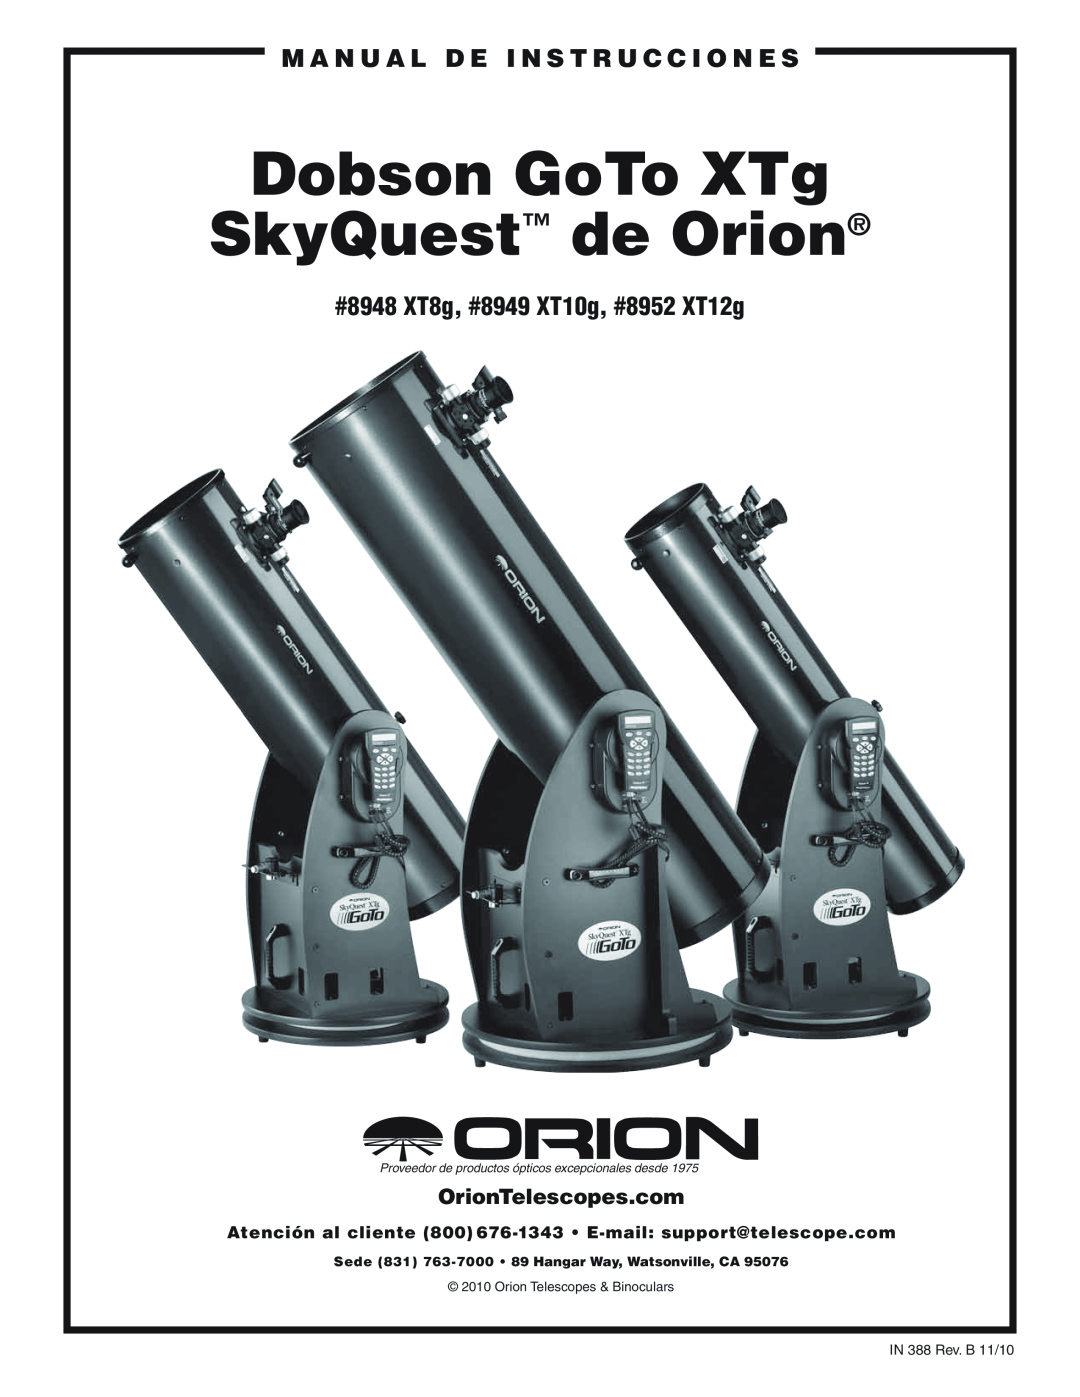 Orion #8948 XT8G, #8952 XT12G manual M A N U A L D E I N S T R U C C I O N E S, #8948 XT8g, #8949 XT10g, #8952 XT12g 